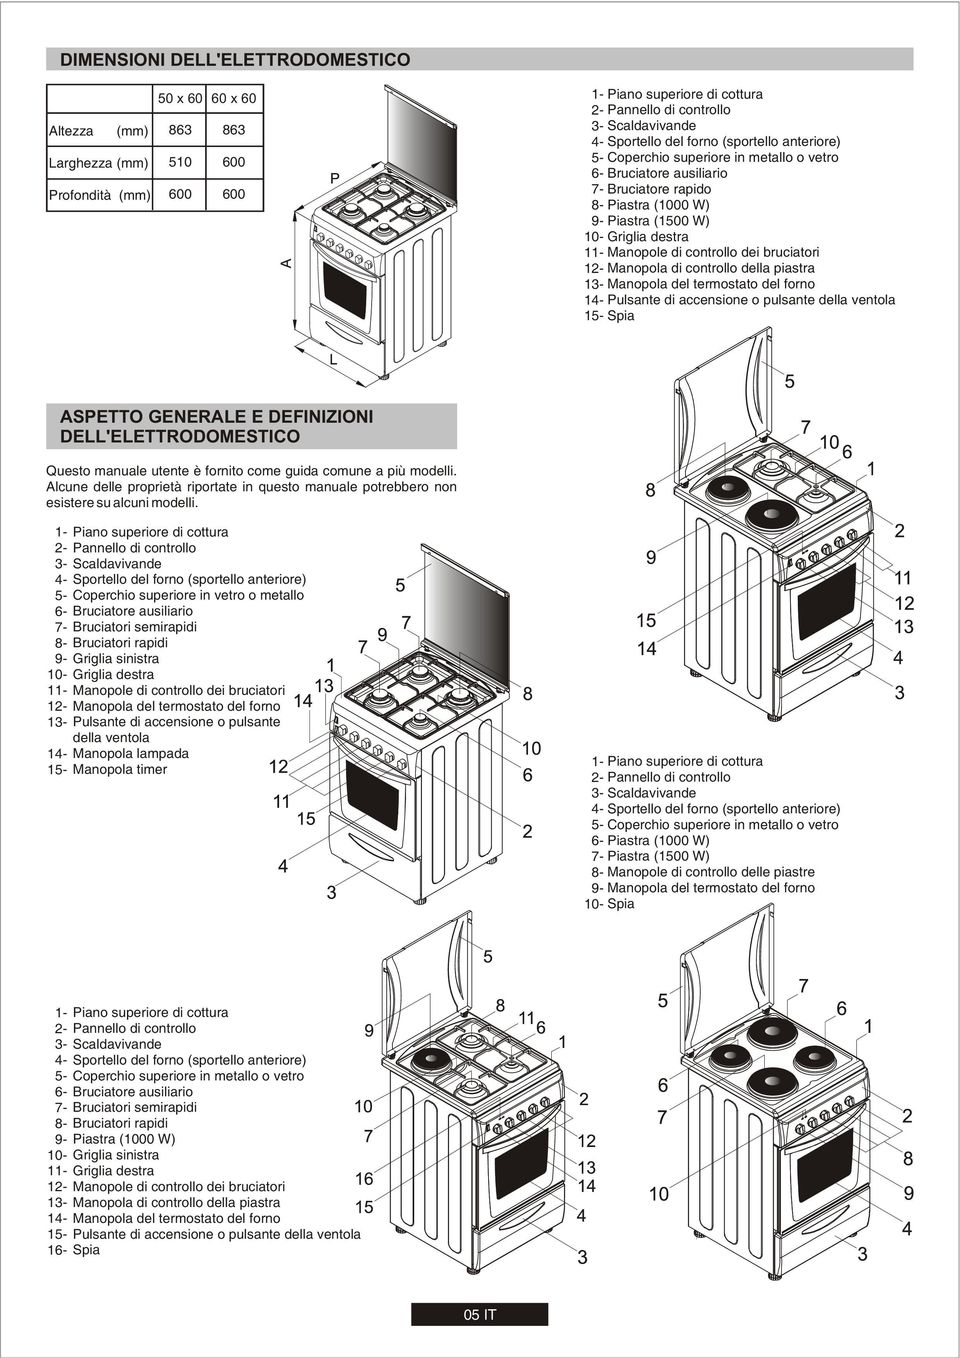 termostato del forno 14- Pulsante di accensione o pulsante della ventola 15- Spia 50 x 60 60 x 60 (mm) 863 863 Larghezza (mm) 510 600 Profondità (mm) 600 600 Altezza ASPETTO GENERALE E DEFINIZIONI